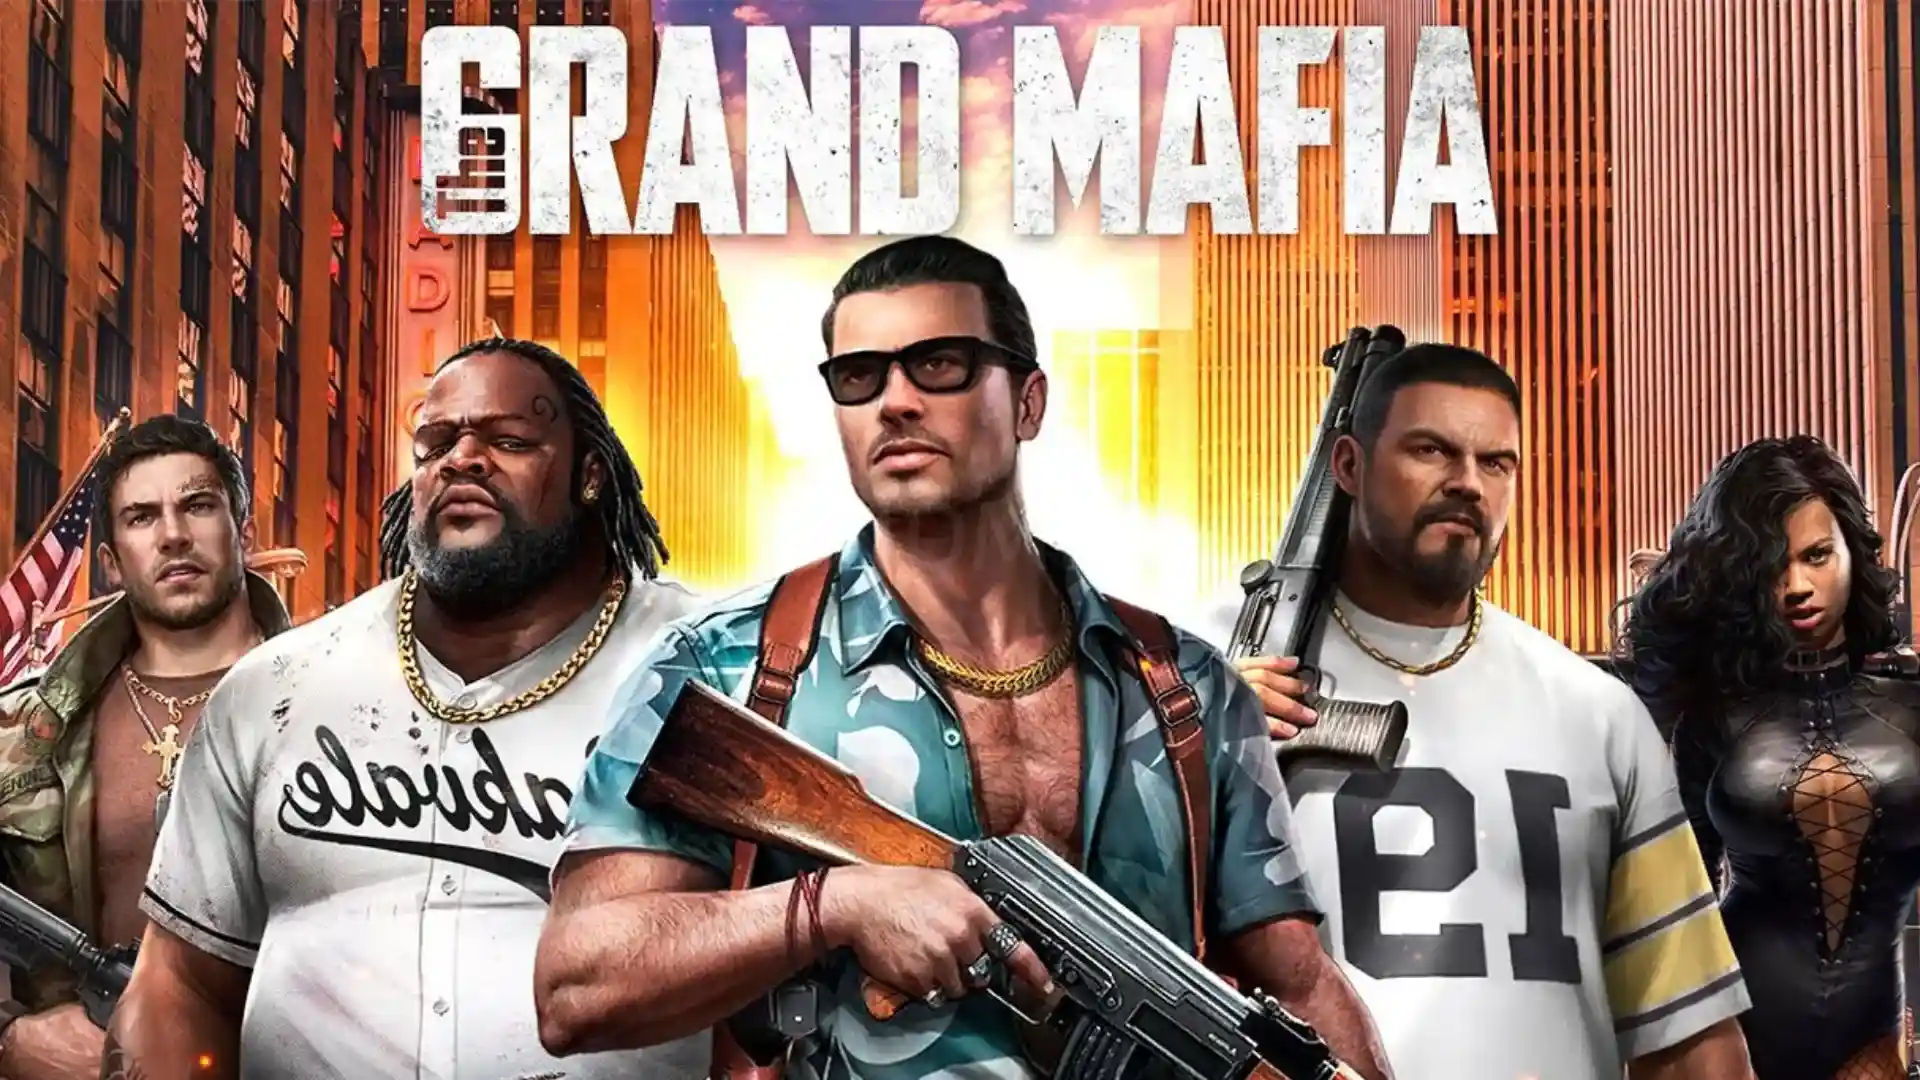 The grand mafia feature image